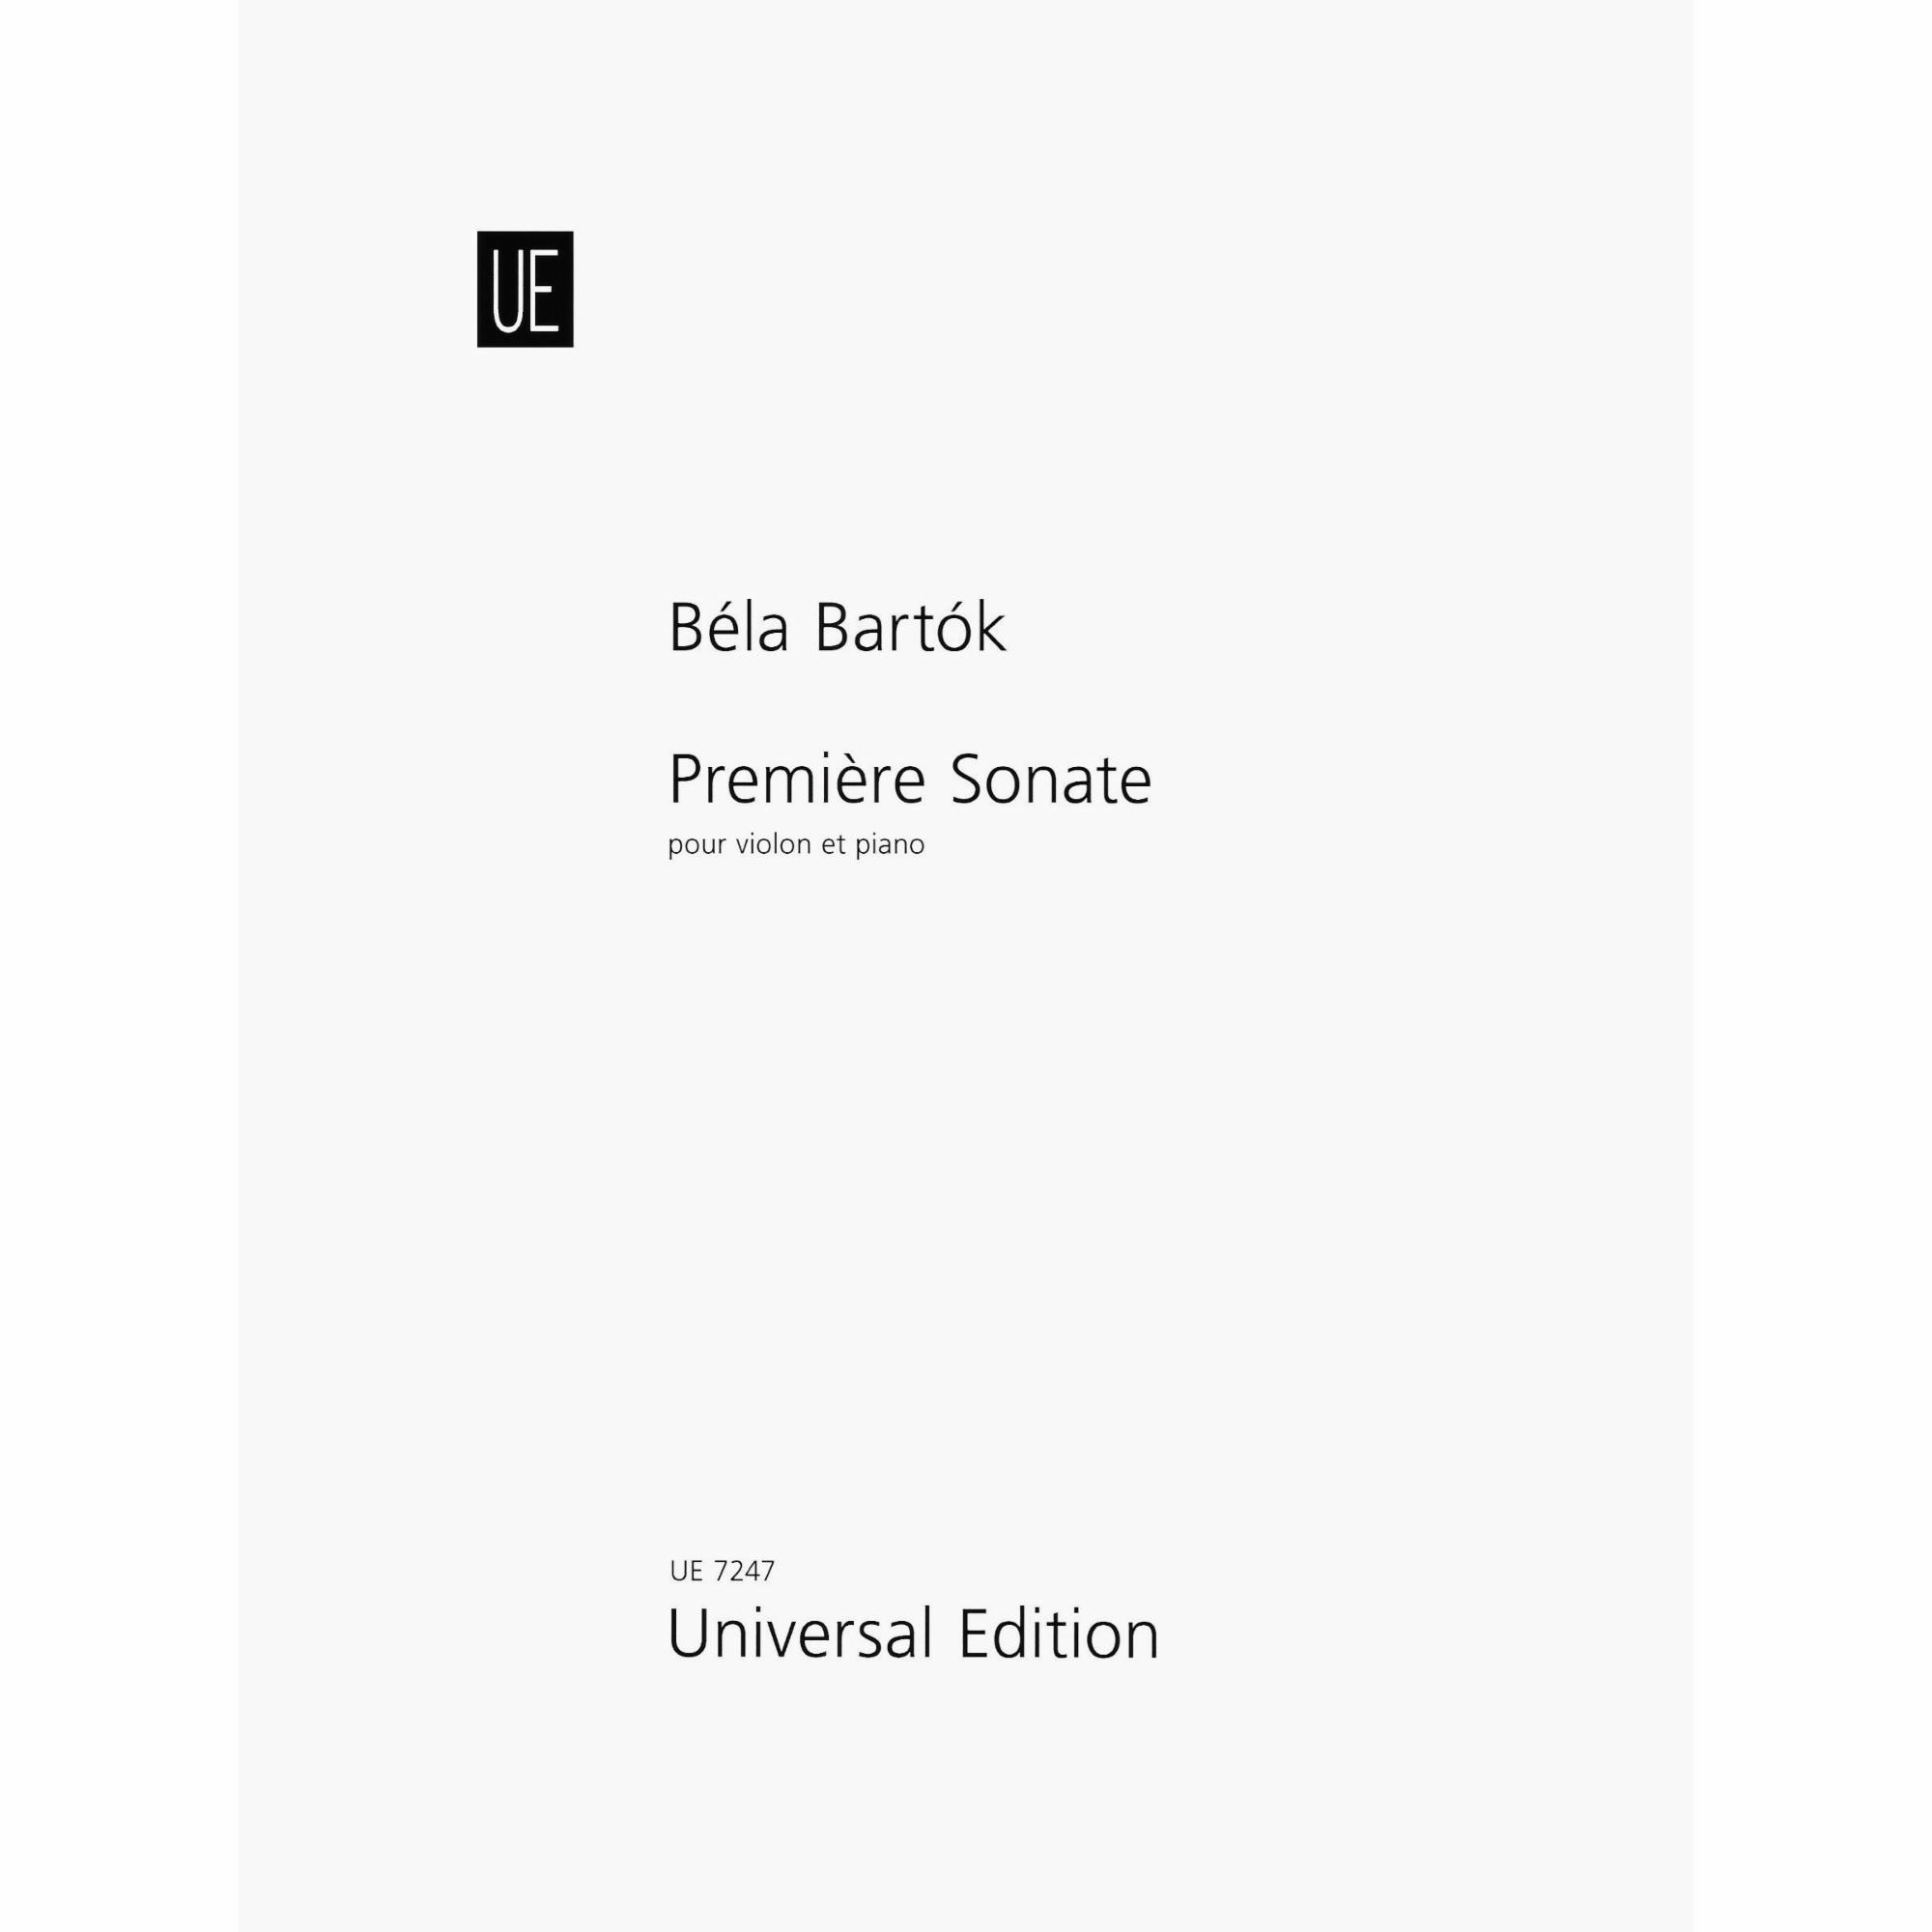 Bartok -- Premiere Sonate for Violin and Piano